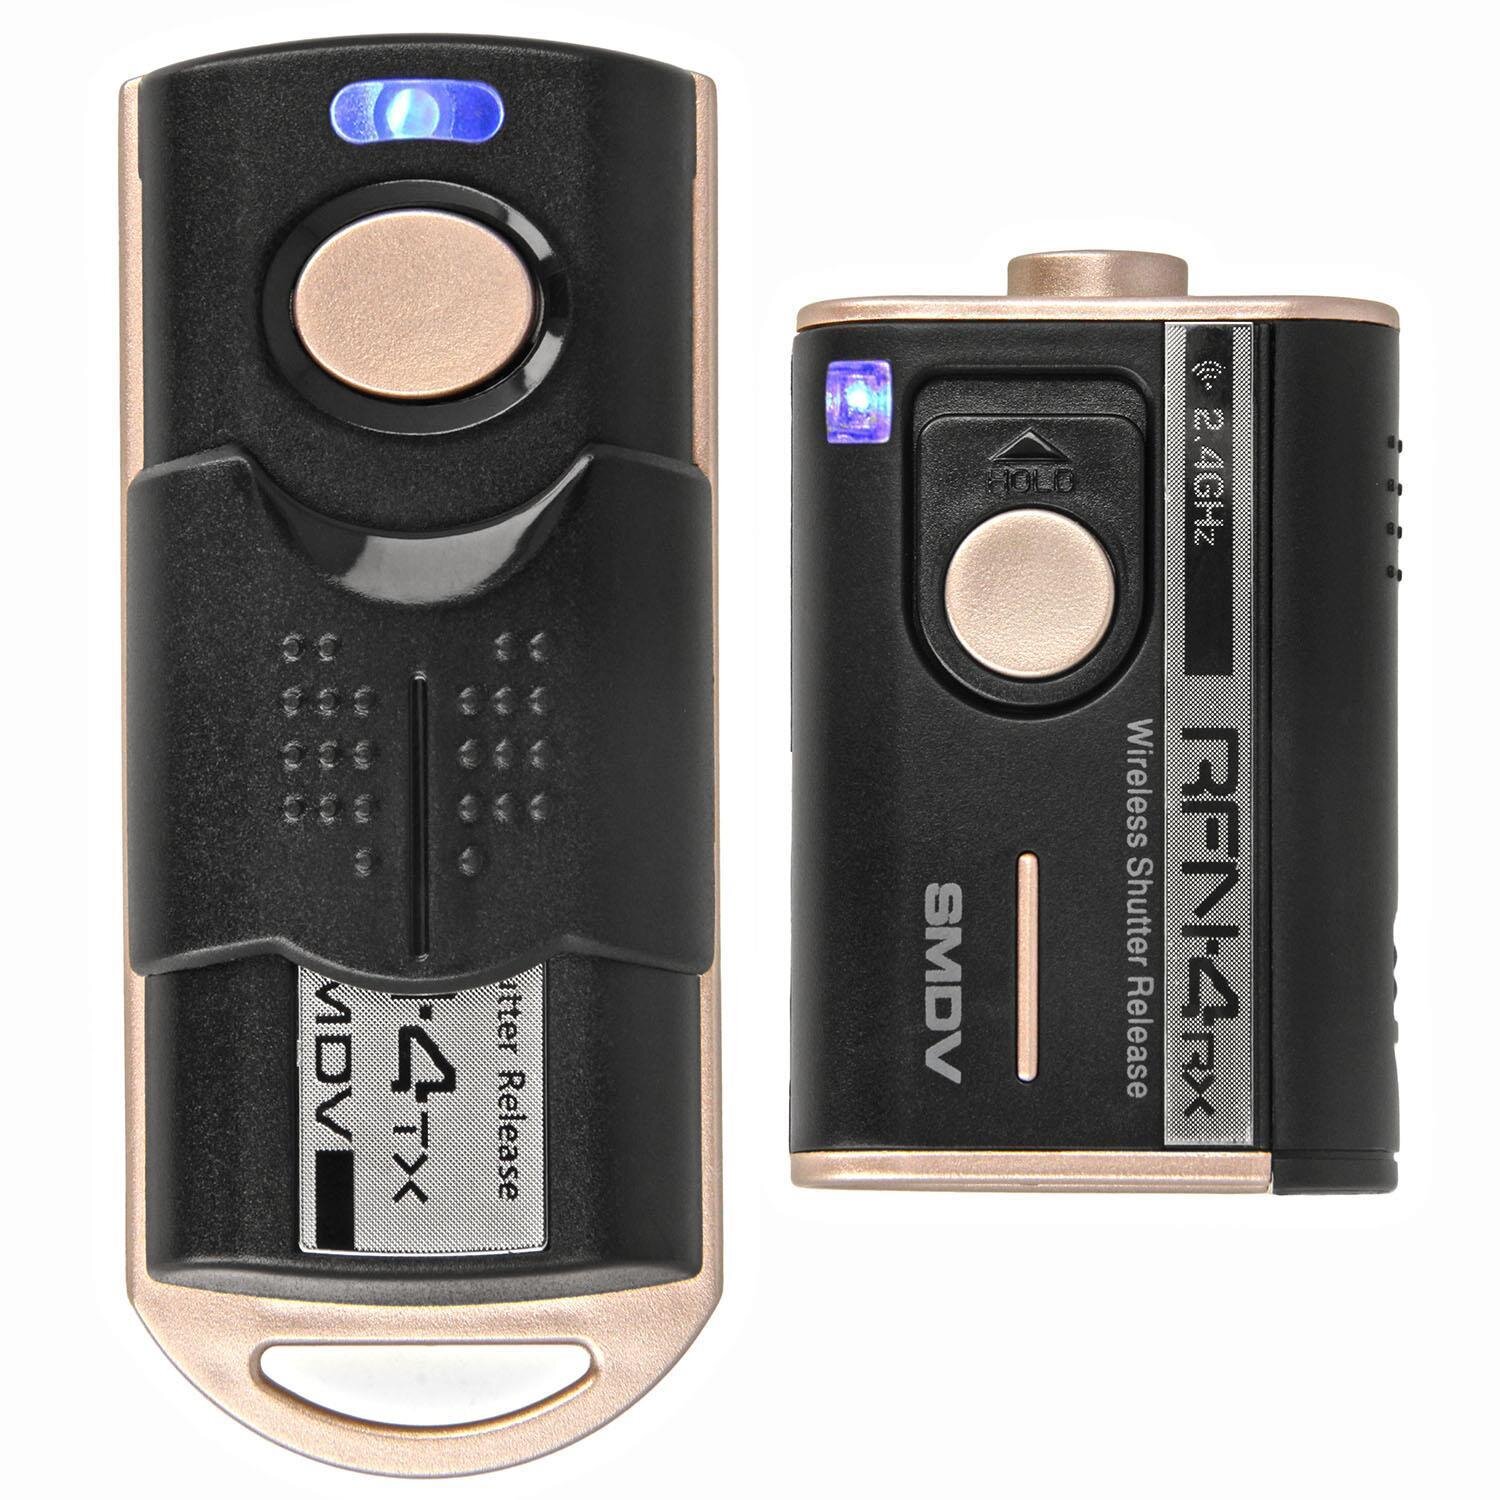 Impulsfoto SMDV RFN-4 RF-907 Kamera Fernausl&ouml;ser, Kompatibel mit Sony und Minolta Kameras , 2,4Ghz, 16 Kan&auml;le, Reichweite bis 100m